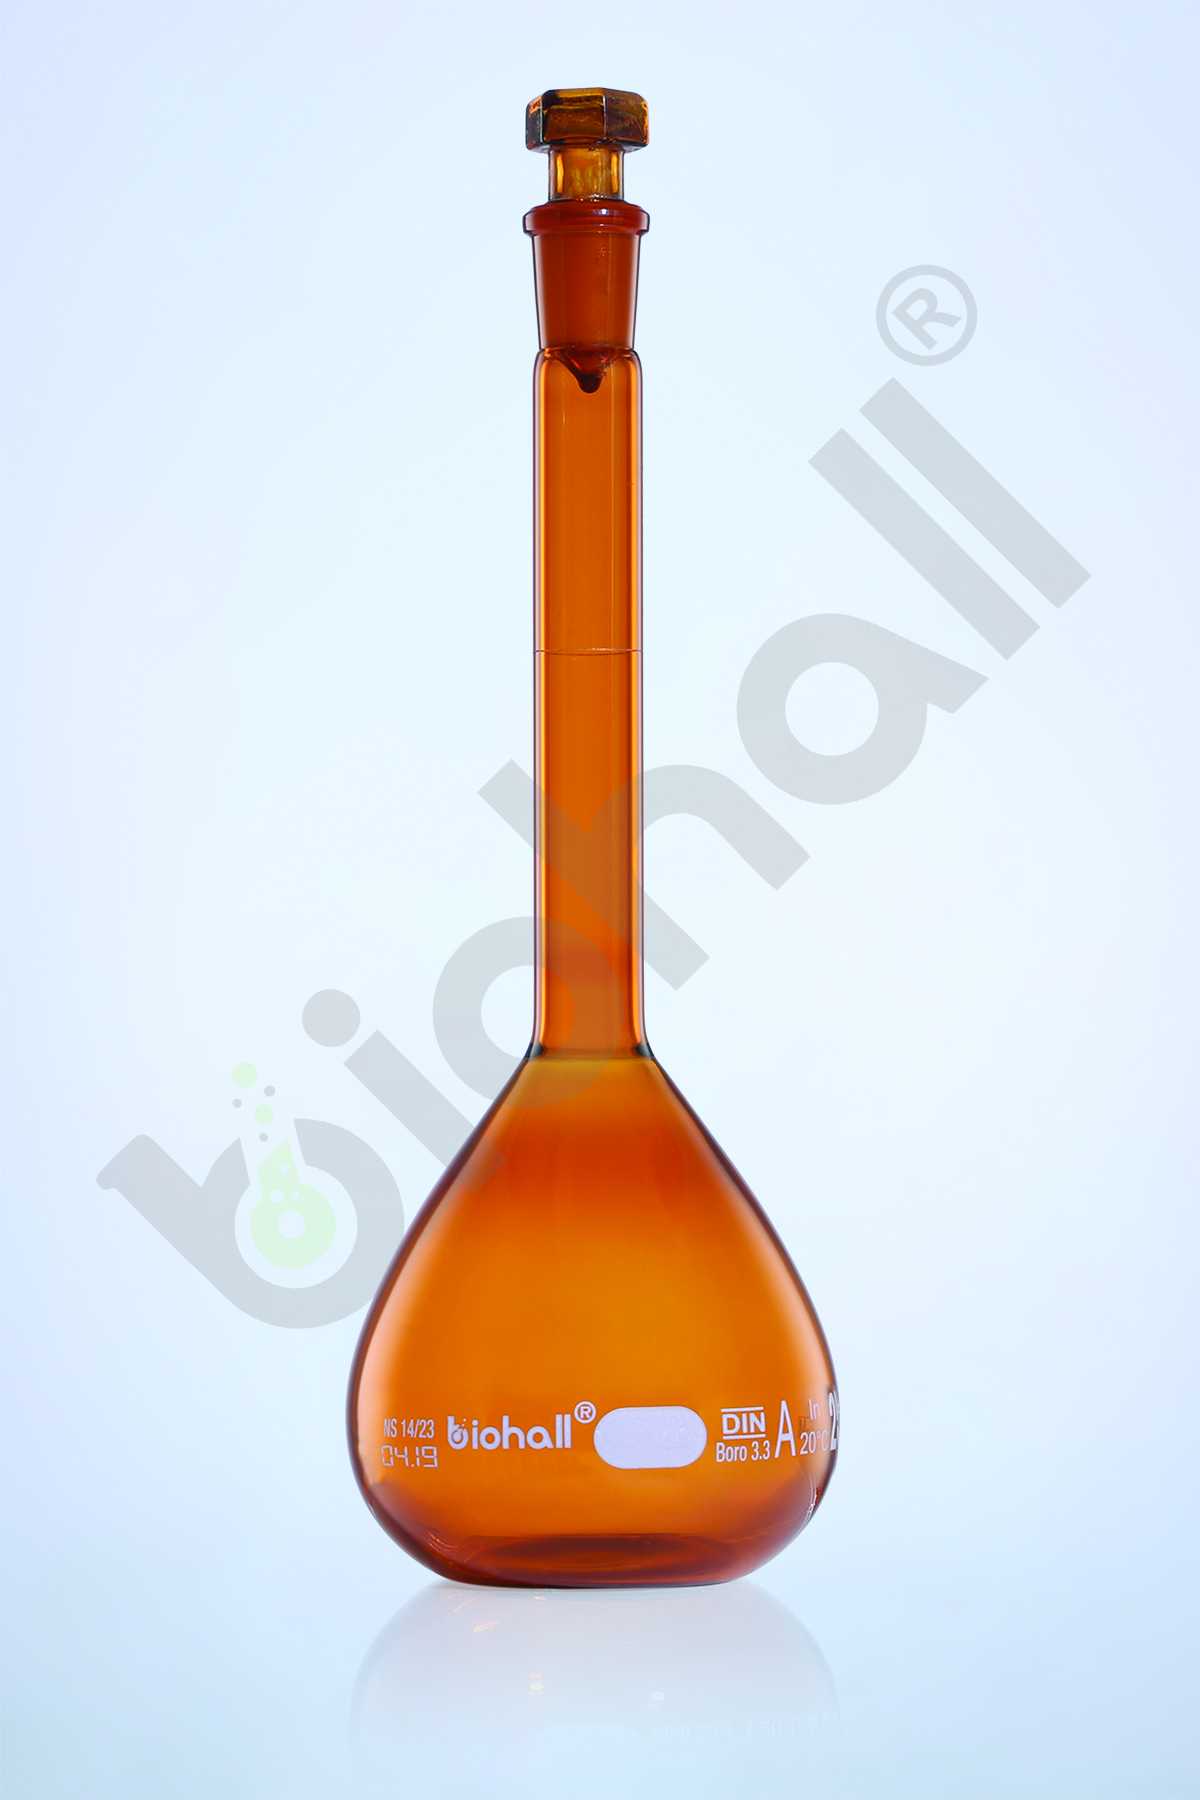 Volumetric Flask, Class-A, Batch Certified (Amber Glass)